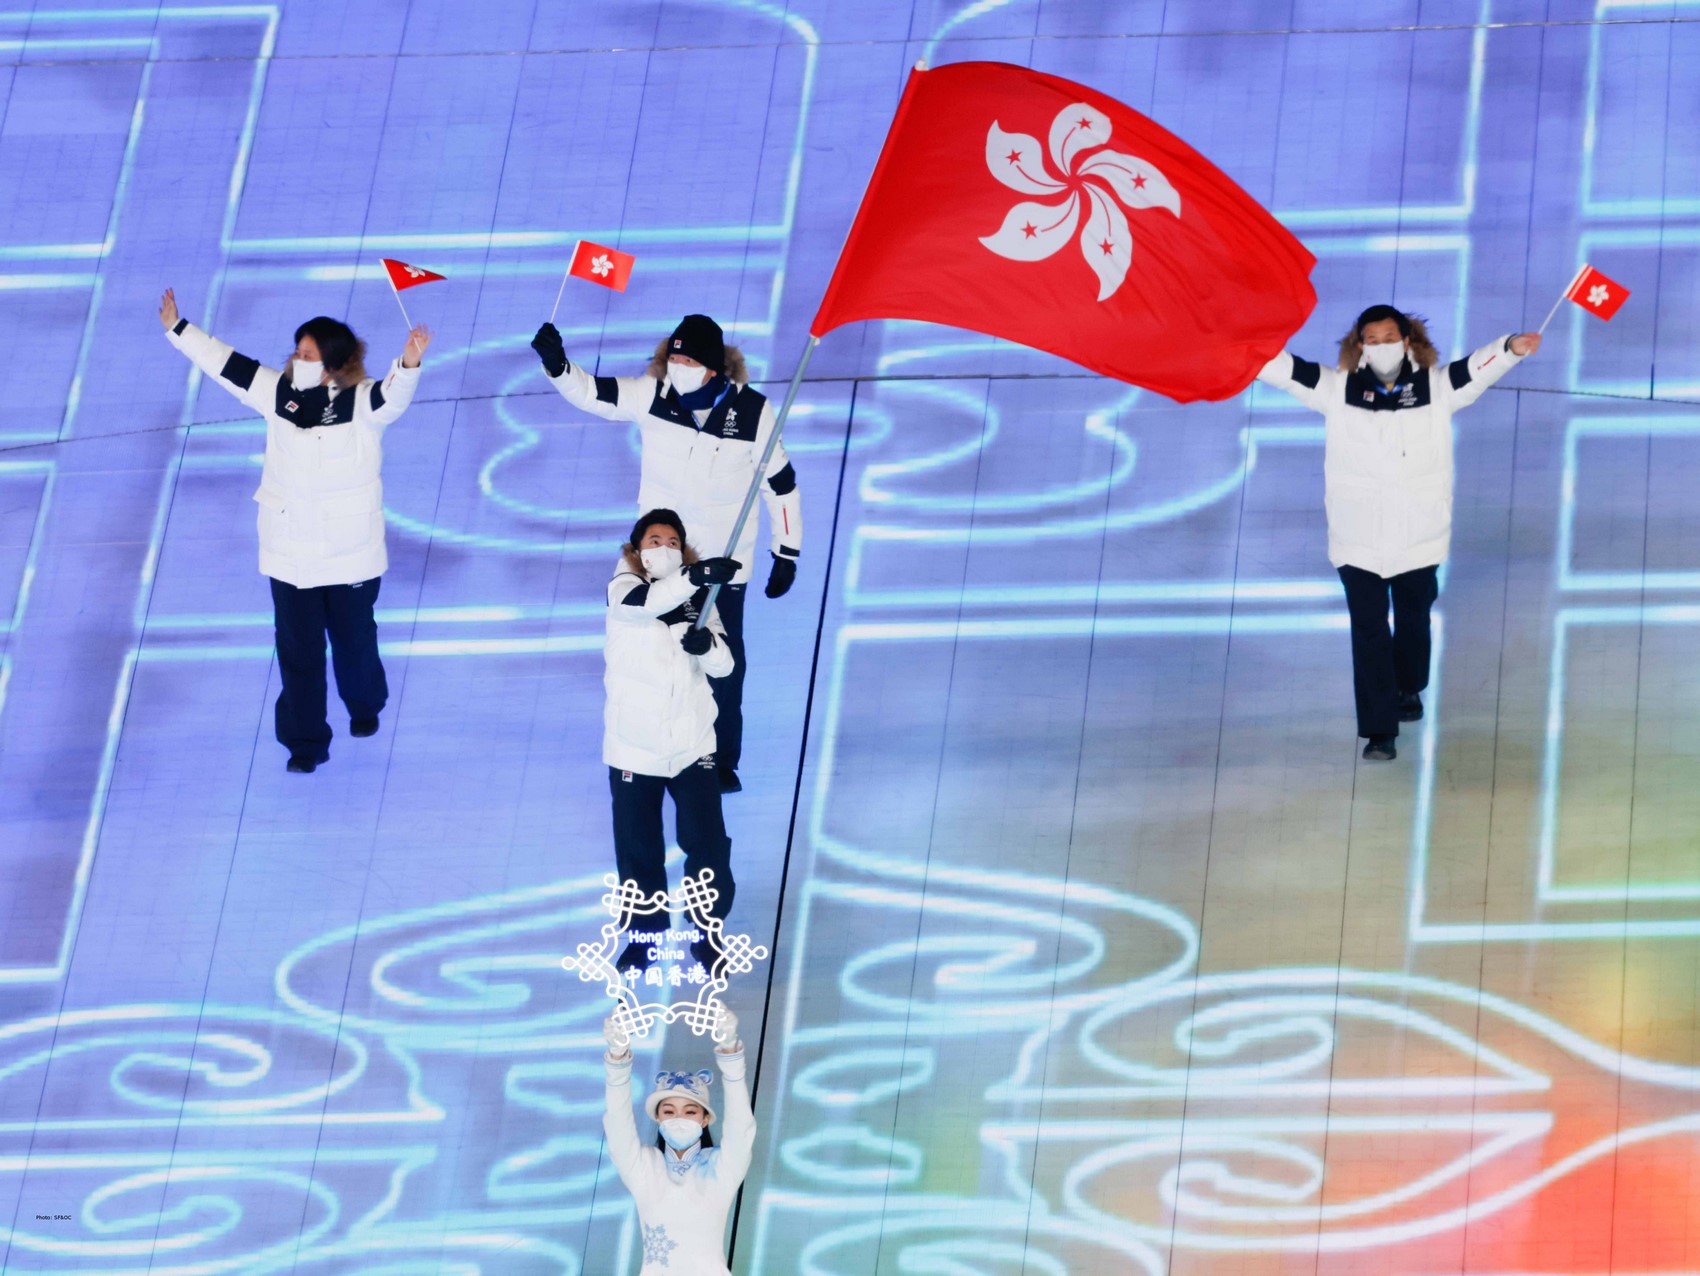 beijing Olympics 2022 winter